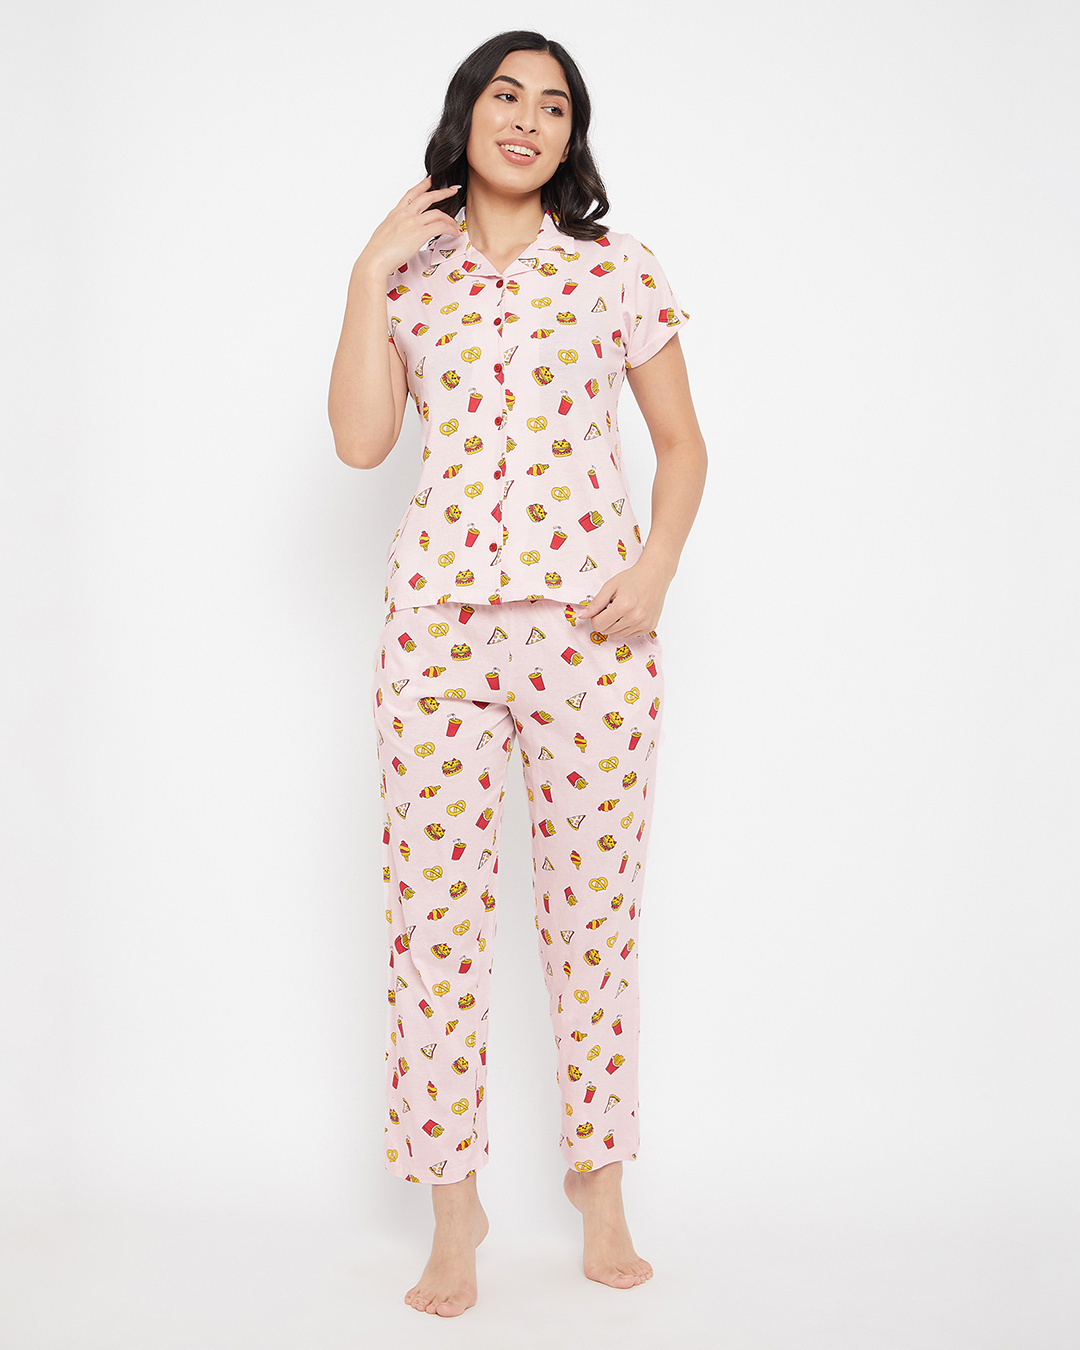 Buy Women's Pink Pizza and Fries AOP Shirt & Pyjamas Set Online in ...